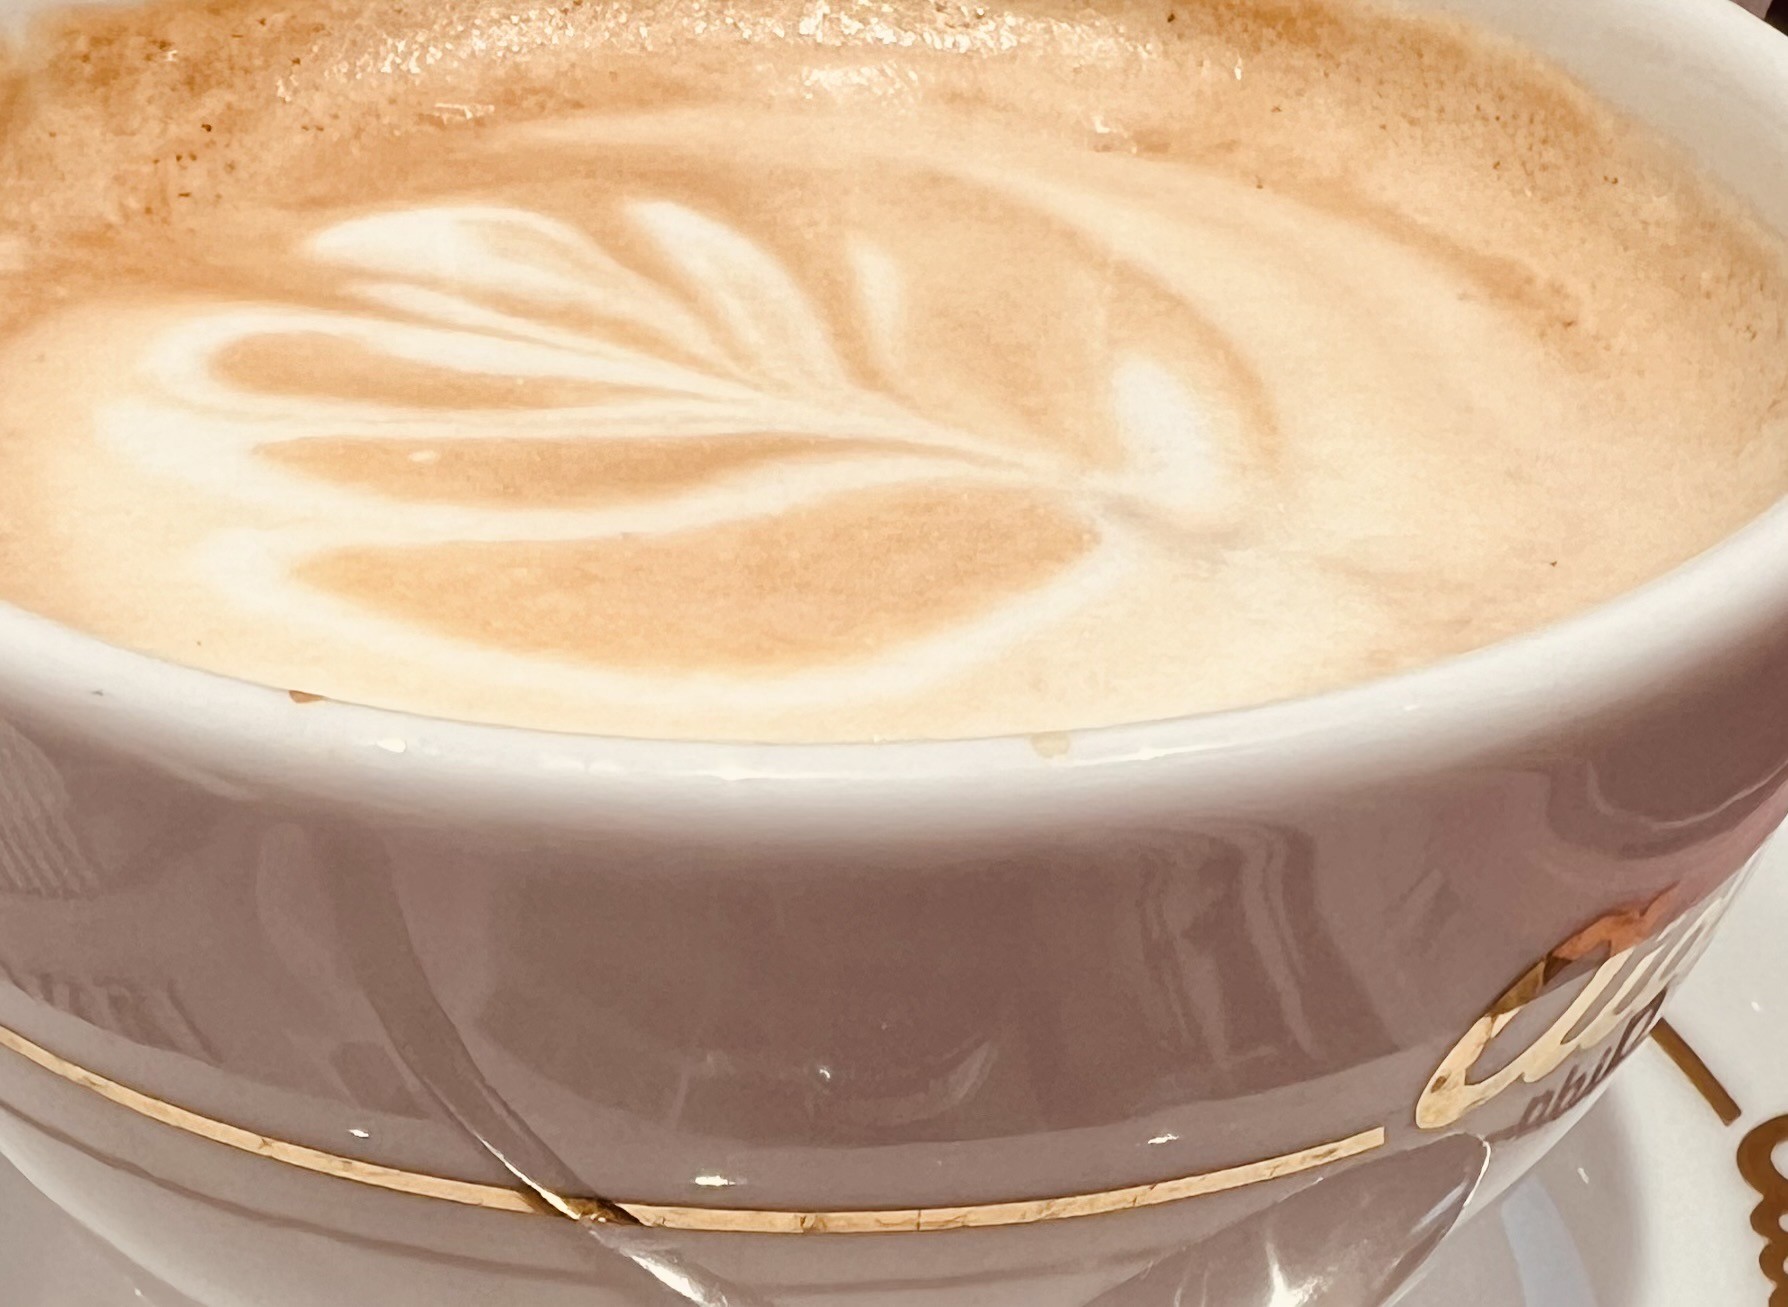 Ein Nahaufnahmebild eines Cappuccinos in einer weißen Tasse mit einem Muster aus Milchschaum auf der Oberfläche, das an ein Blatt erinnert. Die Tasse sitzt auf einer Untertasse und wirkt einladend und warm. Der Hintergrund ist unscharf, wodurch der Fokus auf den Kaffee gerichtet wird.